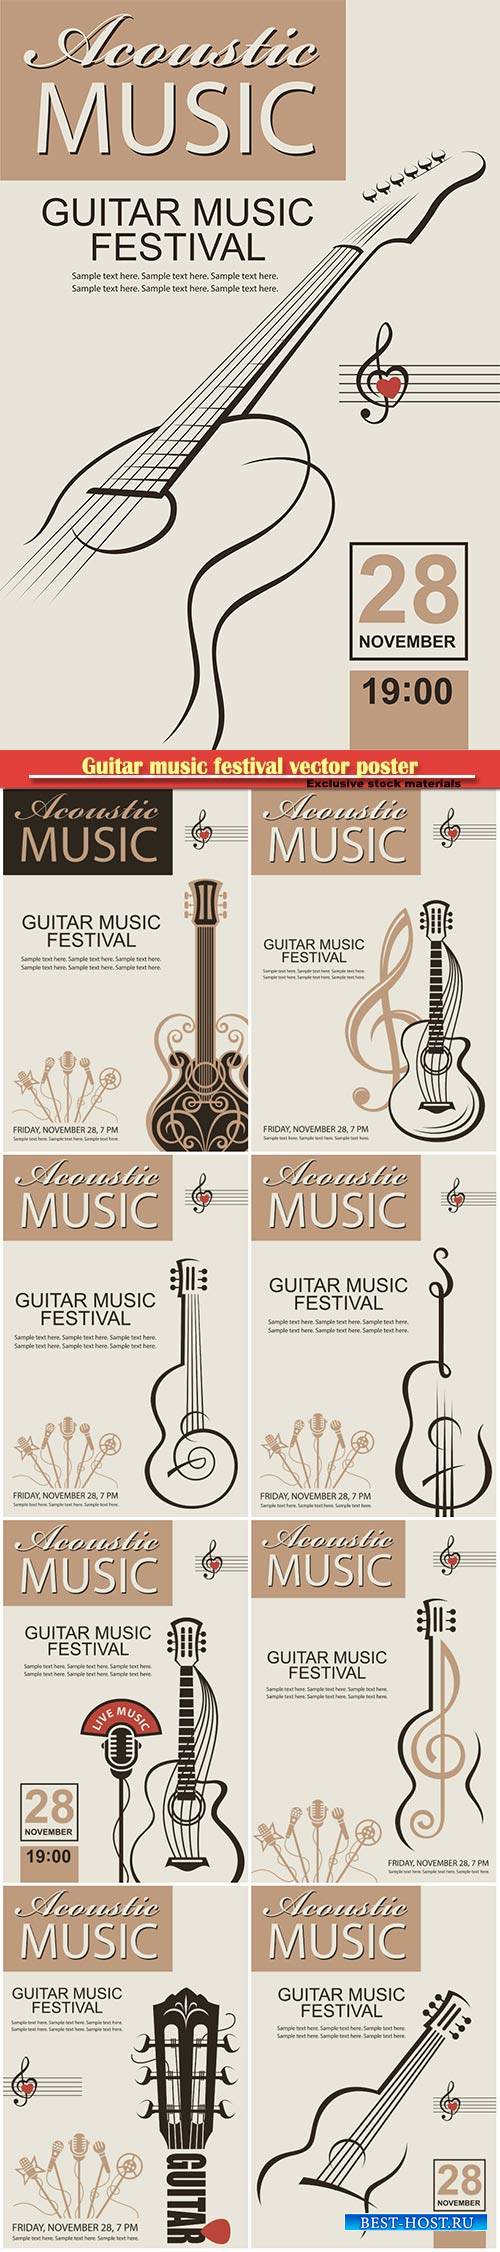 Guitar music festival vector poster